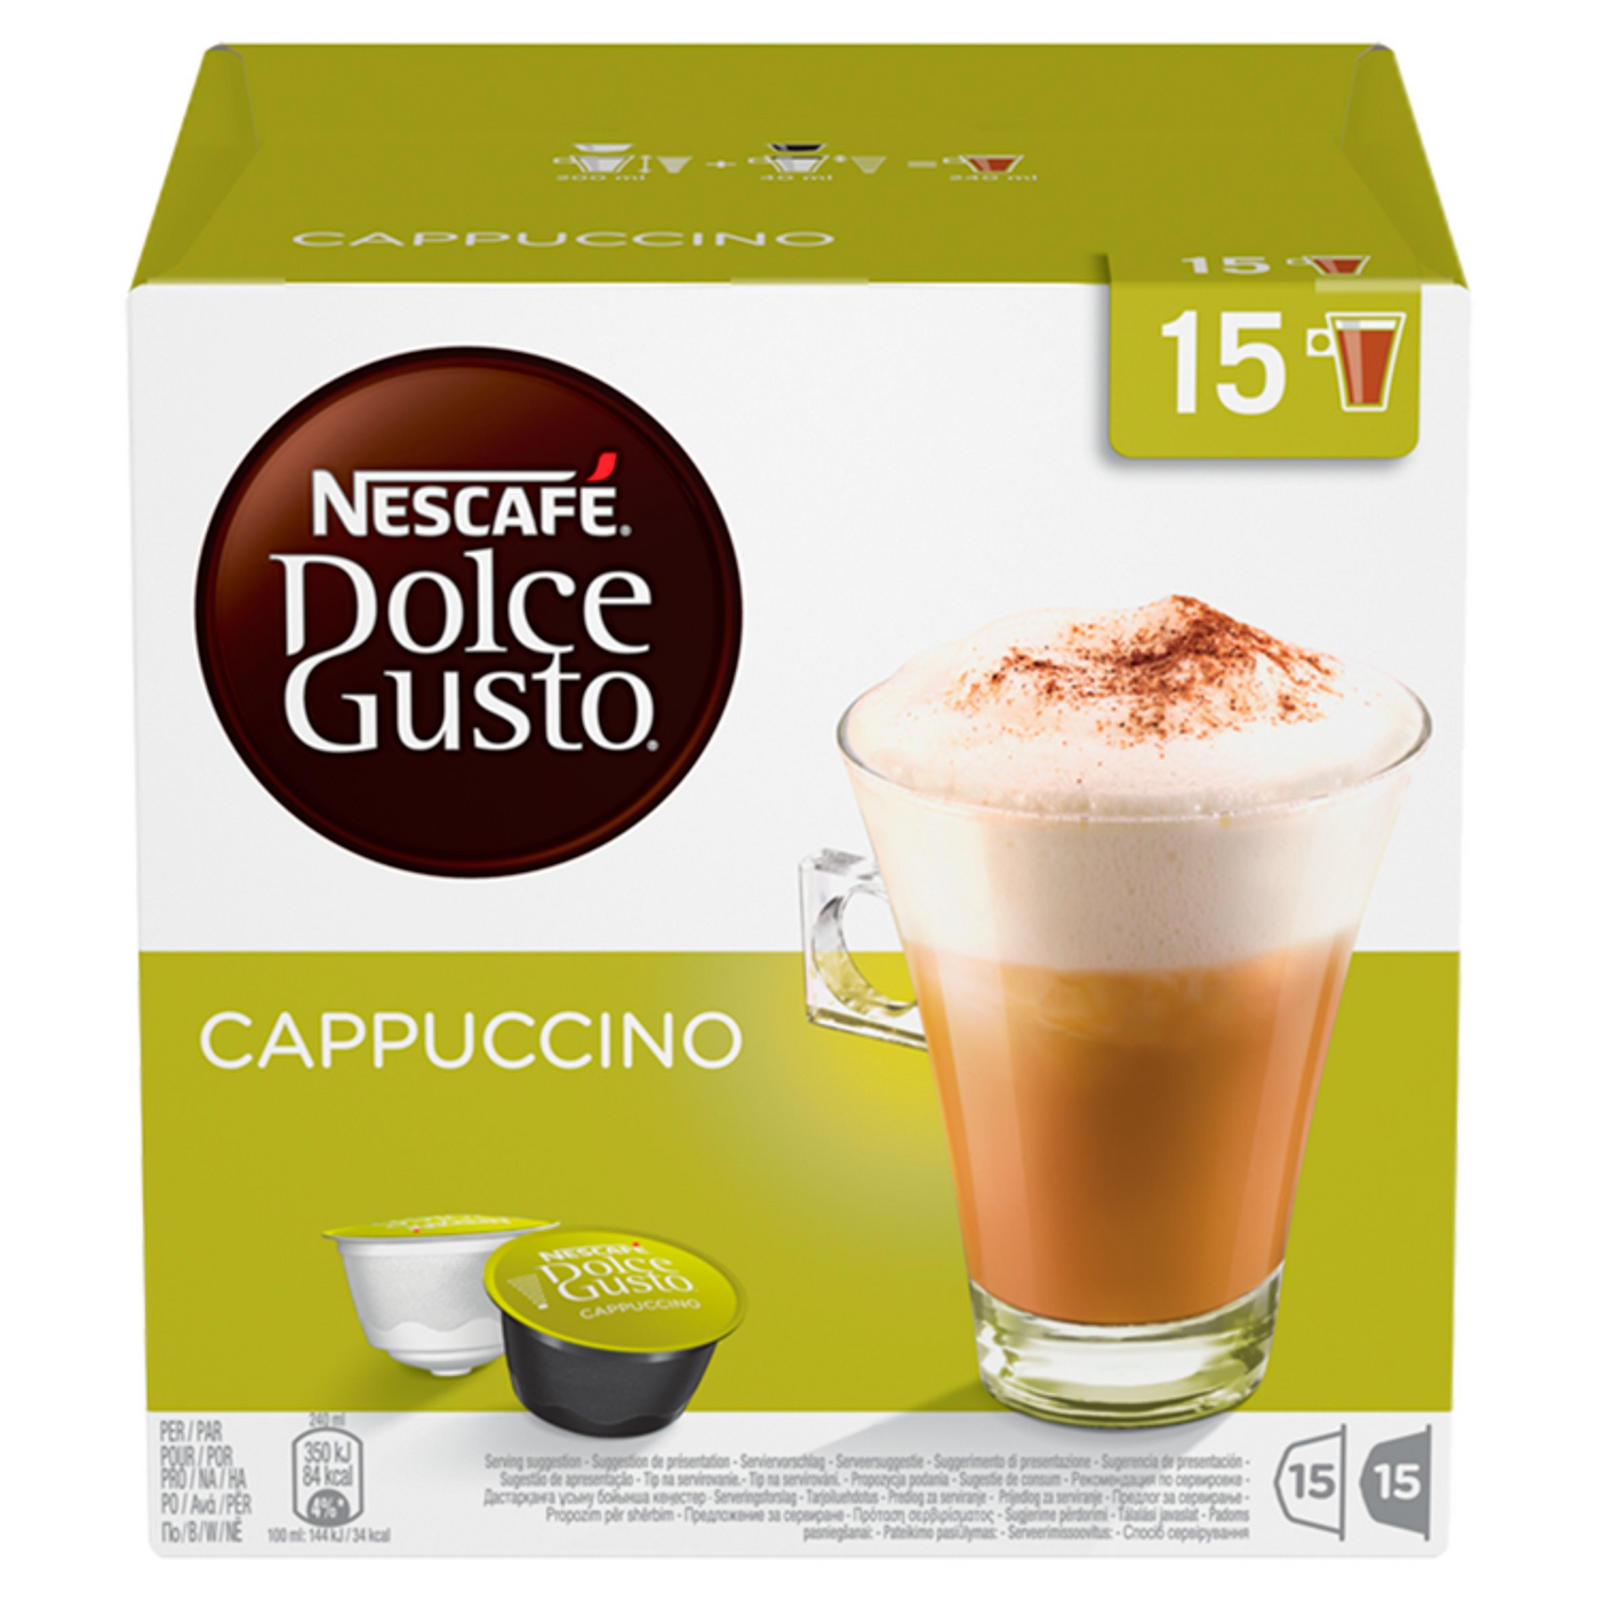 NESCAFE Dolce Gusto Cappuccino Coffee Pods 30 Capsules Per Box | Coffee ...